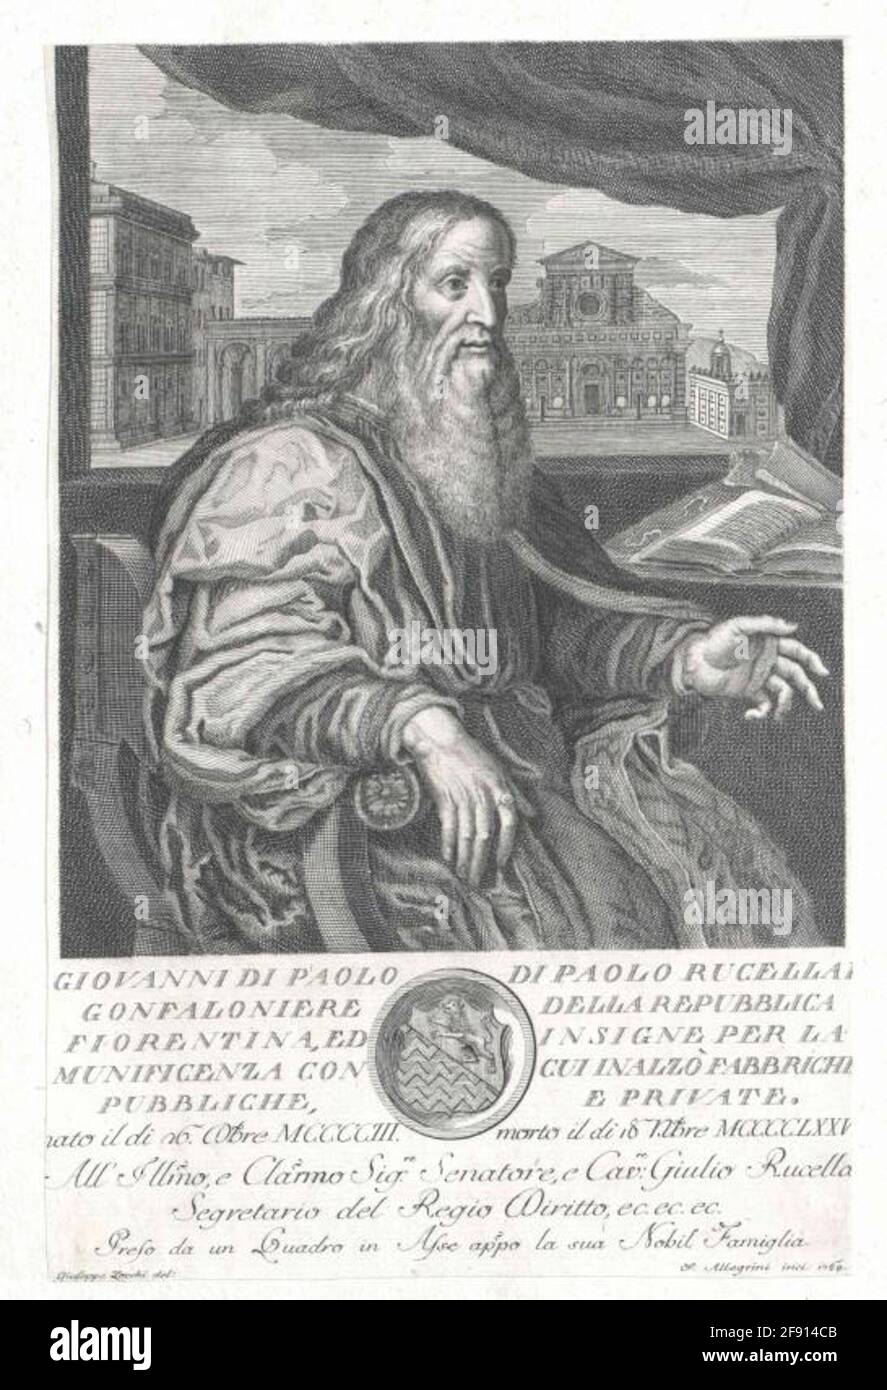 Rucellai, Giovanni di Paolo. Stock Photo